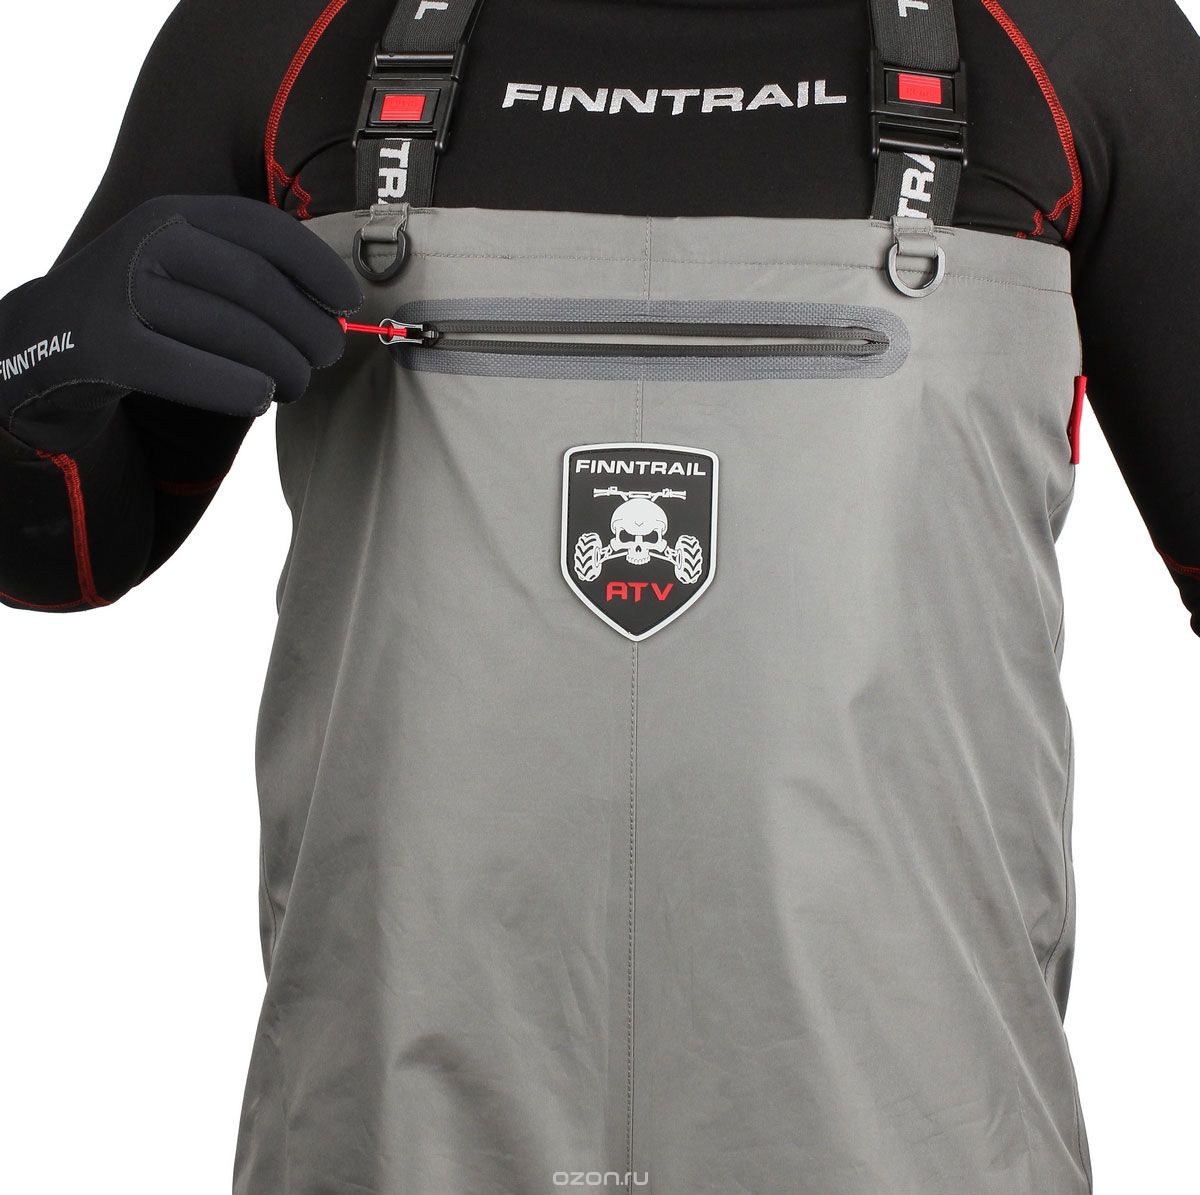  Finntrail Athletic Plus, : . 1522Grey.  XL (52/54)